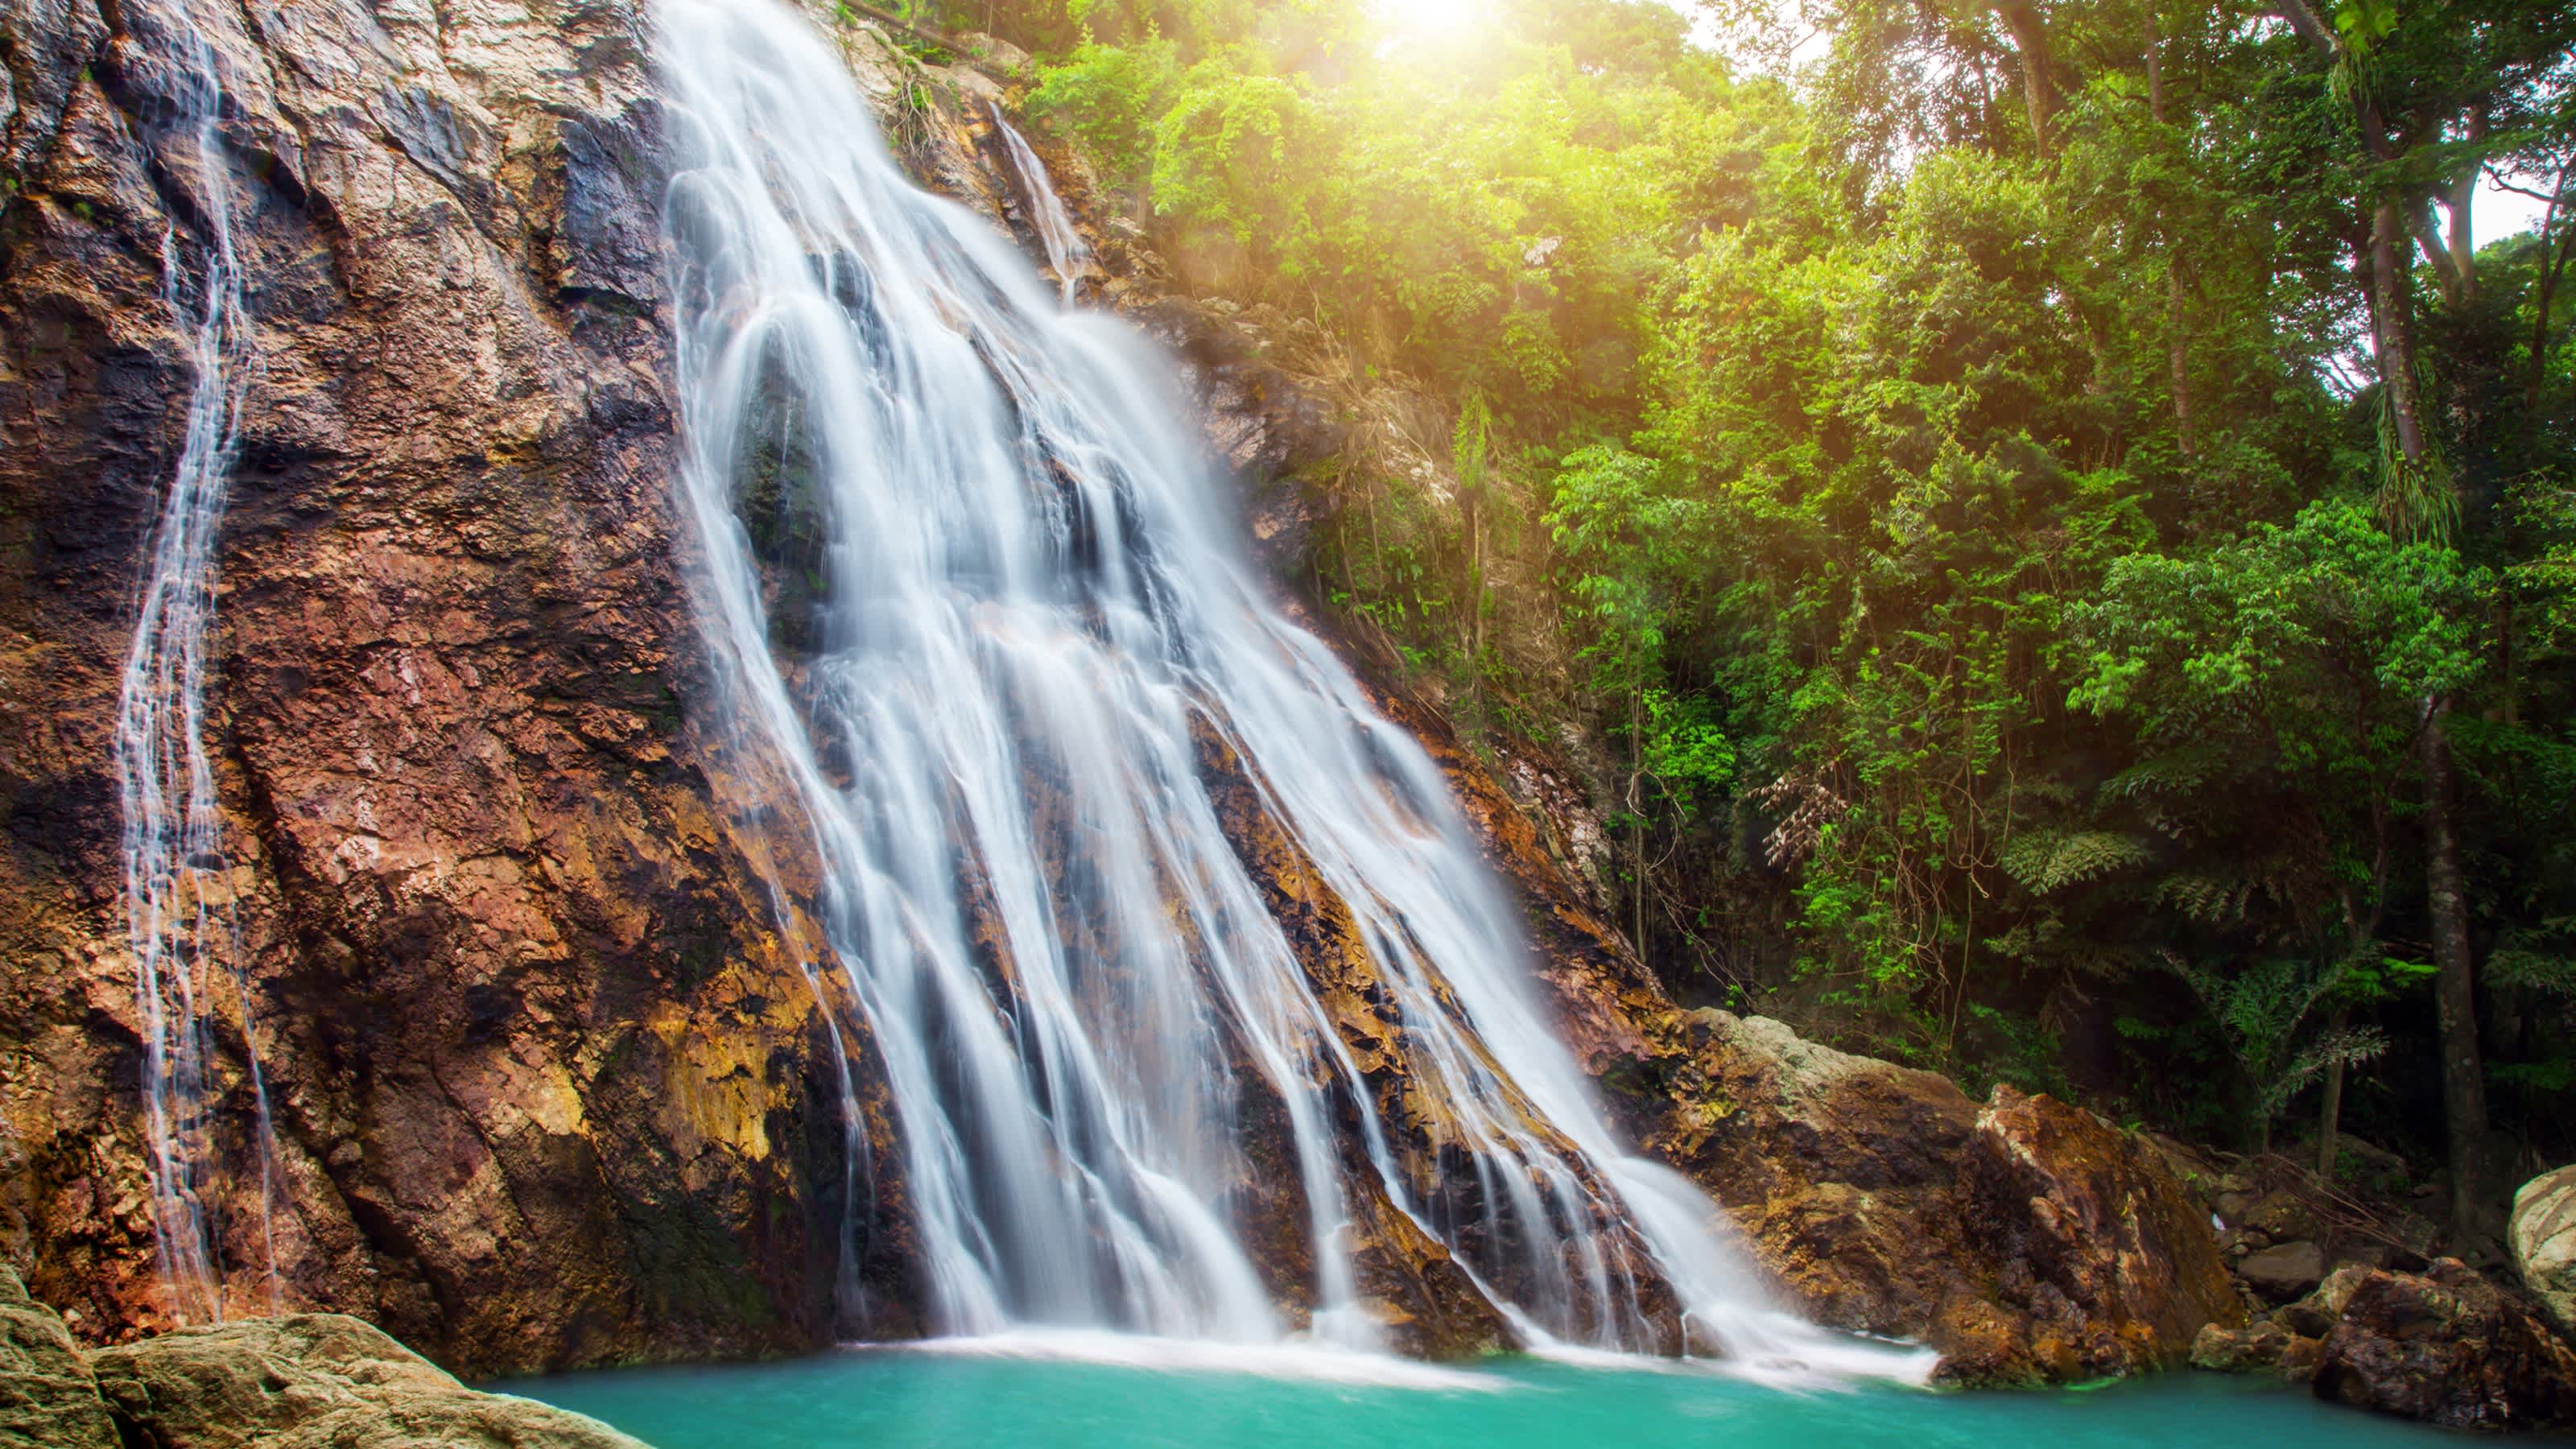 Na Muang Wasserfall, Koh Samui, Thailand

